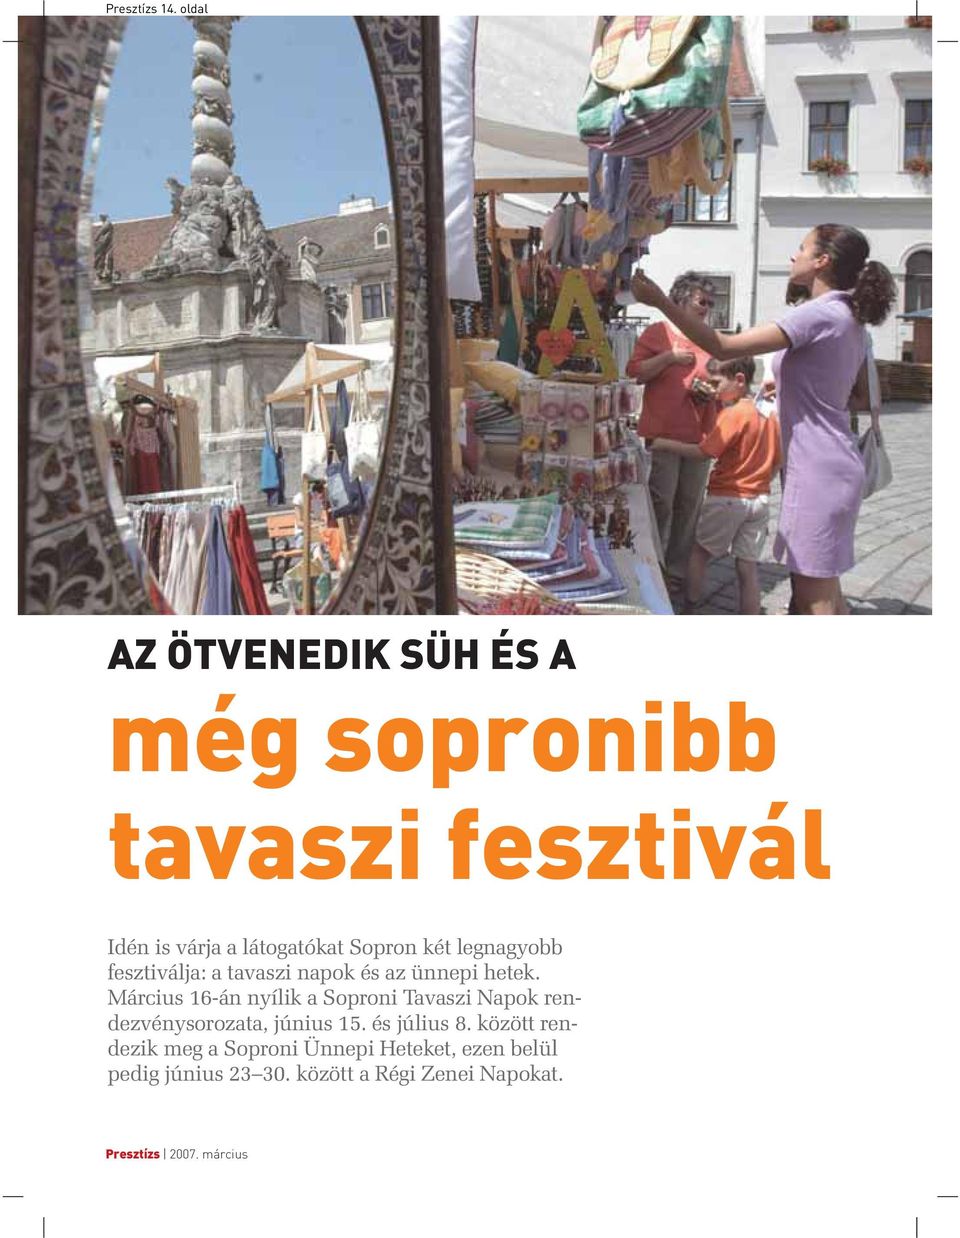 Sopron két legnagyobb fesztiválja: a tavaszi napok és az ünnepi hetek.